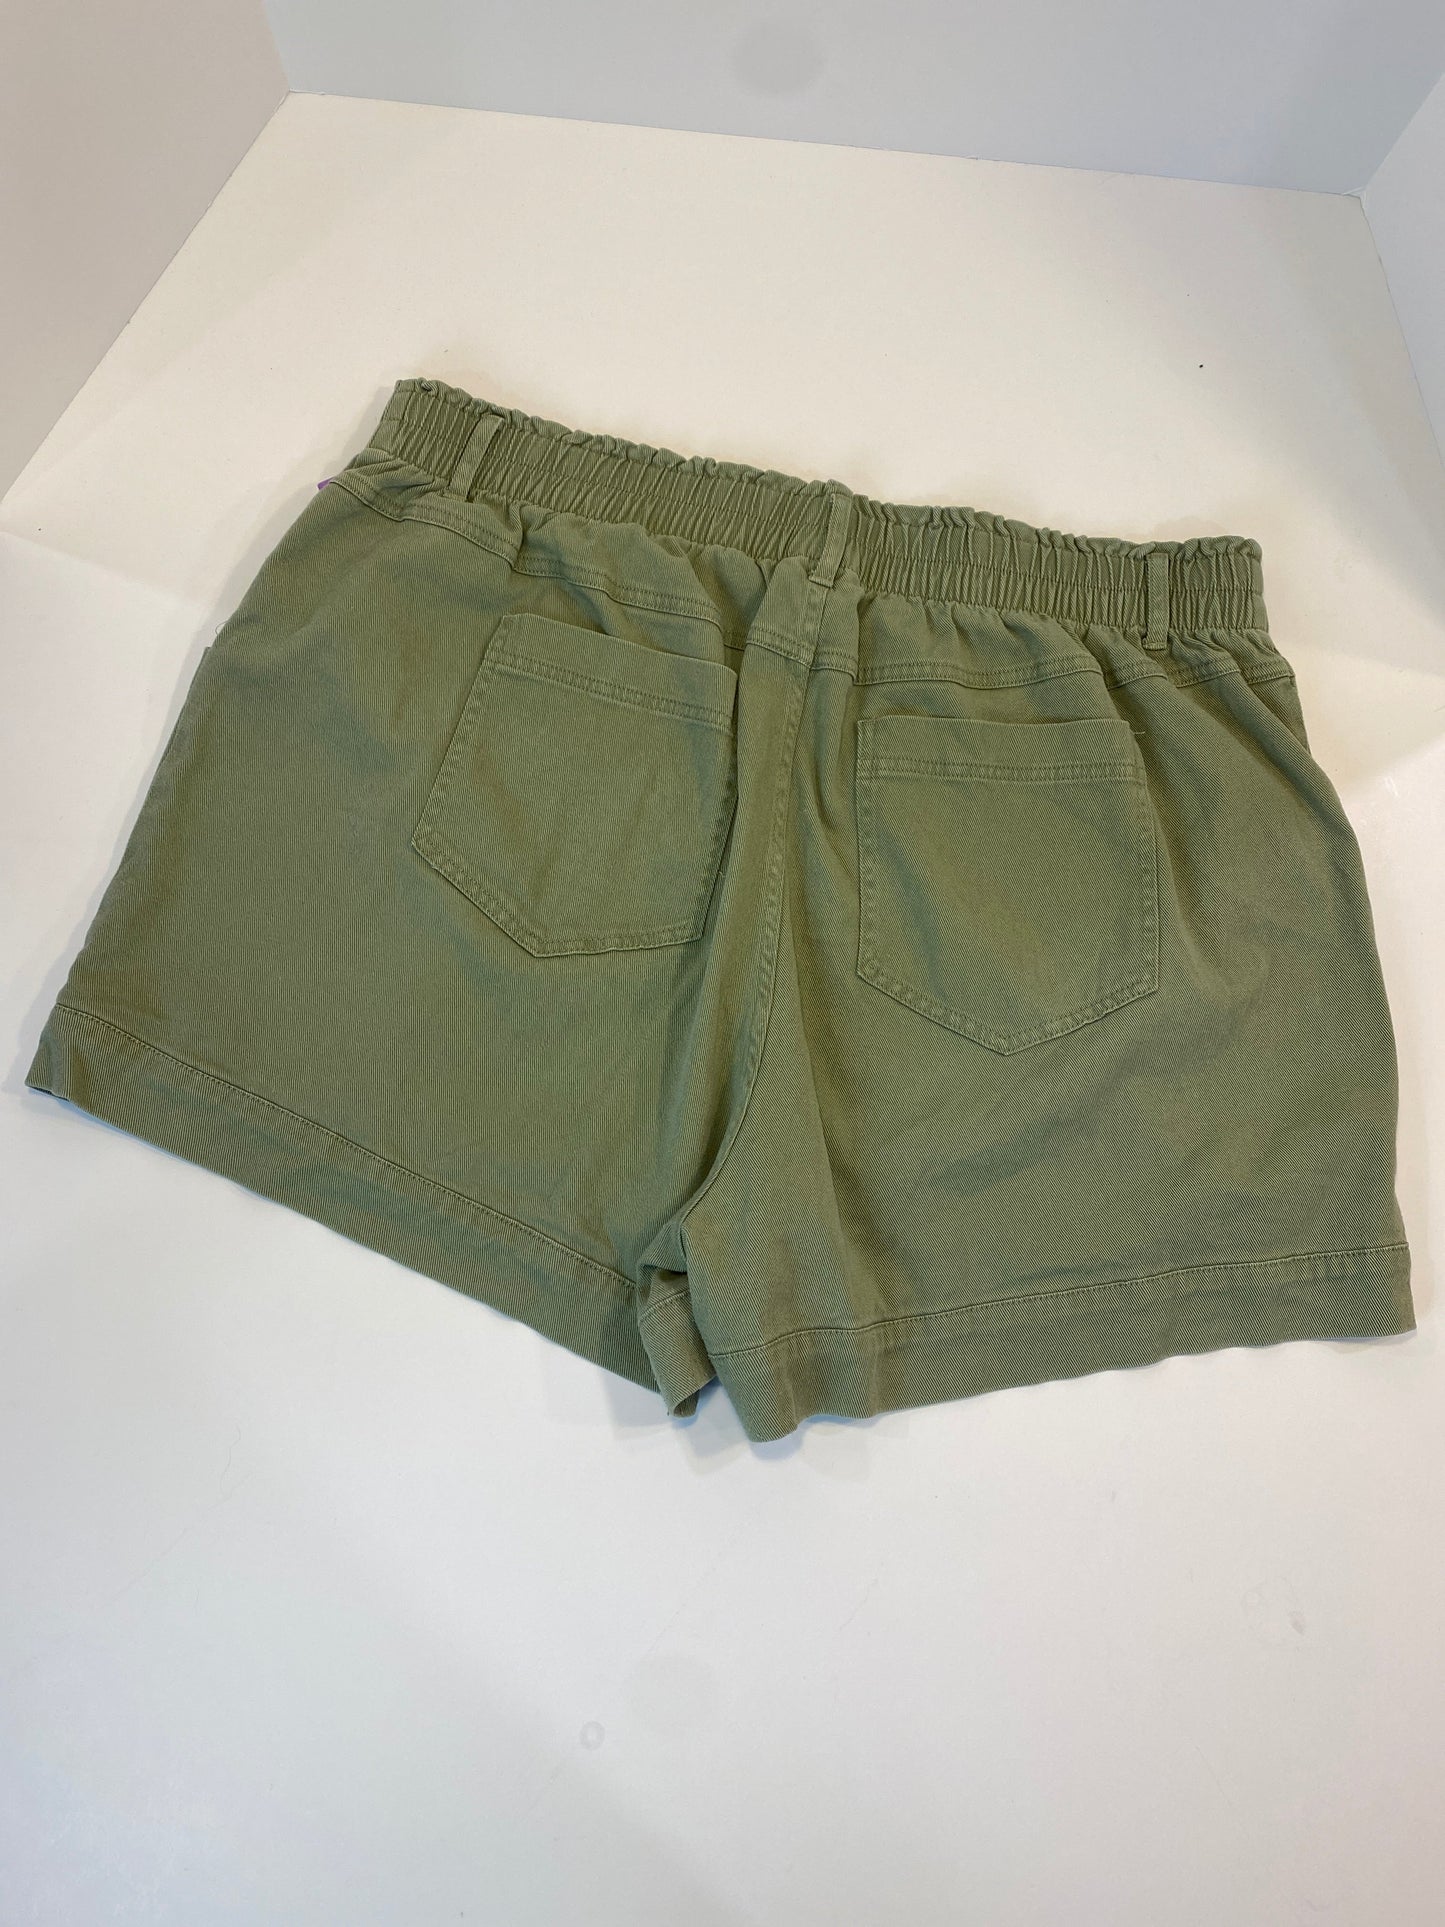 Green Shorts Knox Rose, Size 1x